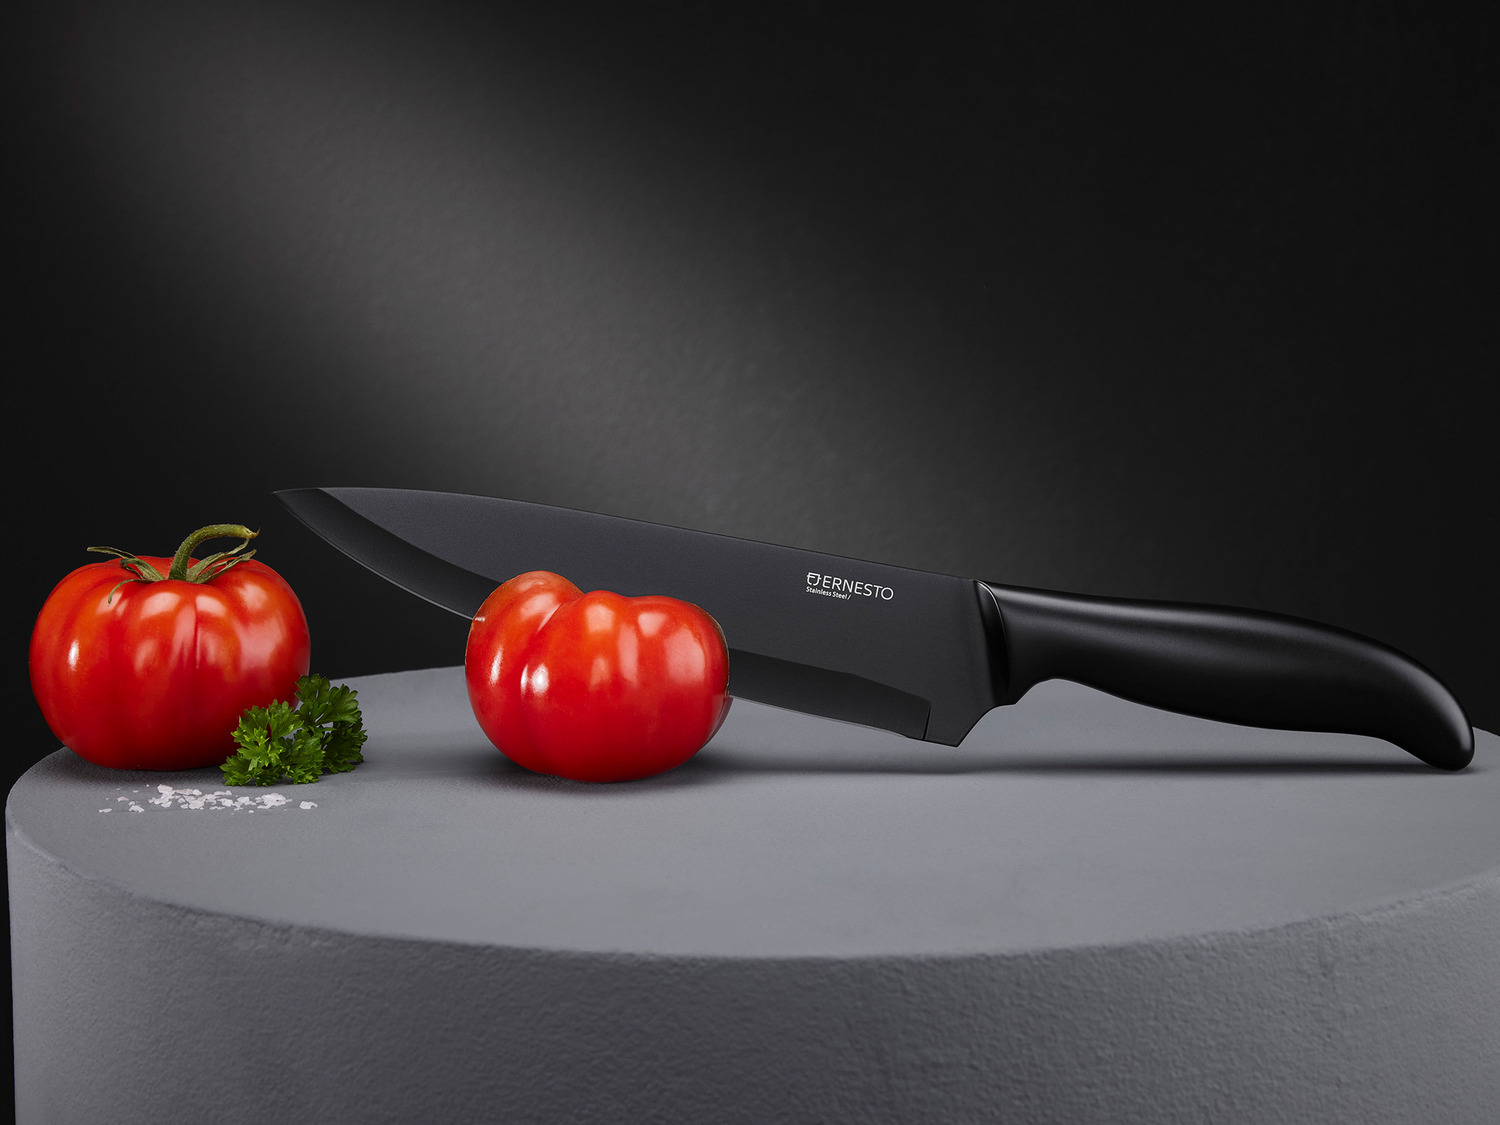 ERNESTO® Messer aus Edelstahl, schwarz | LIDL